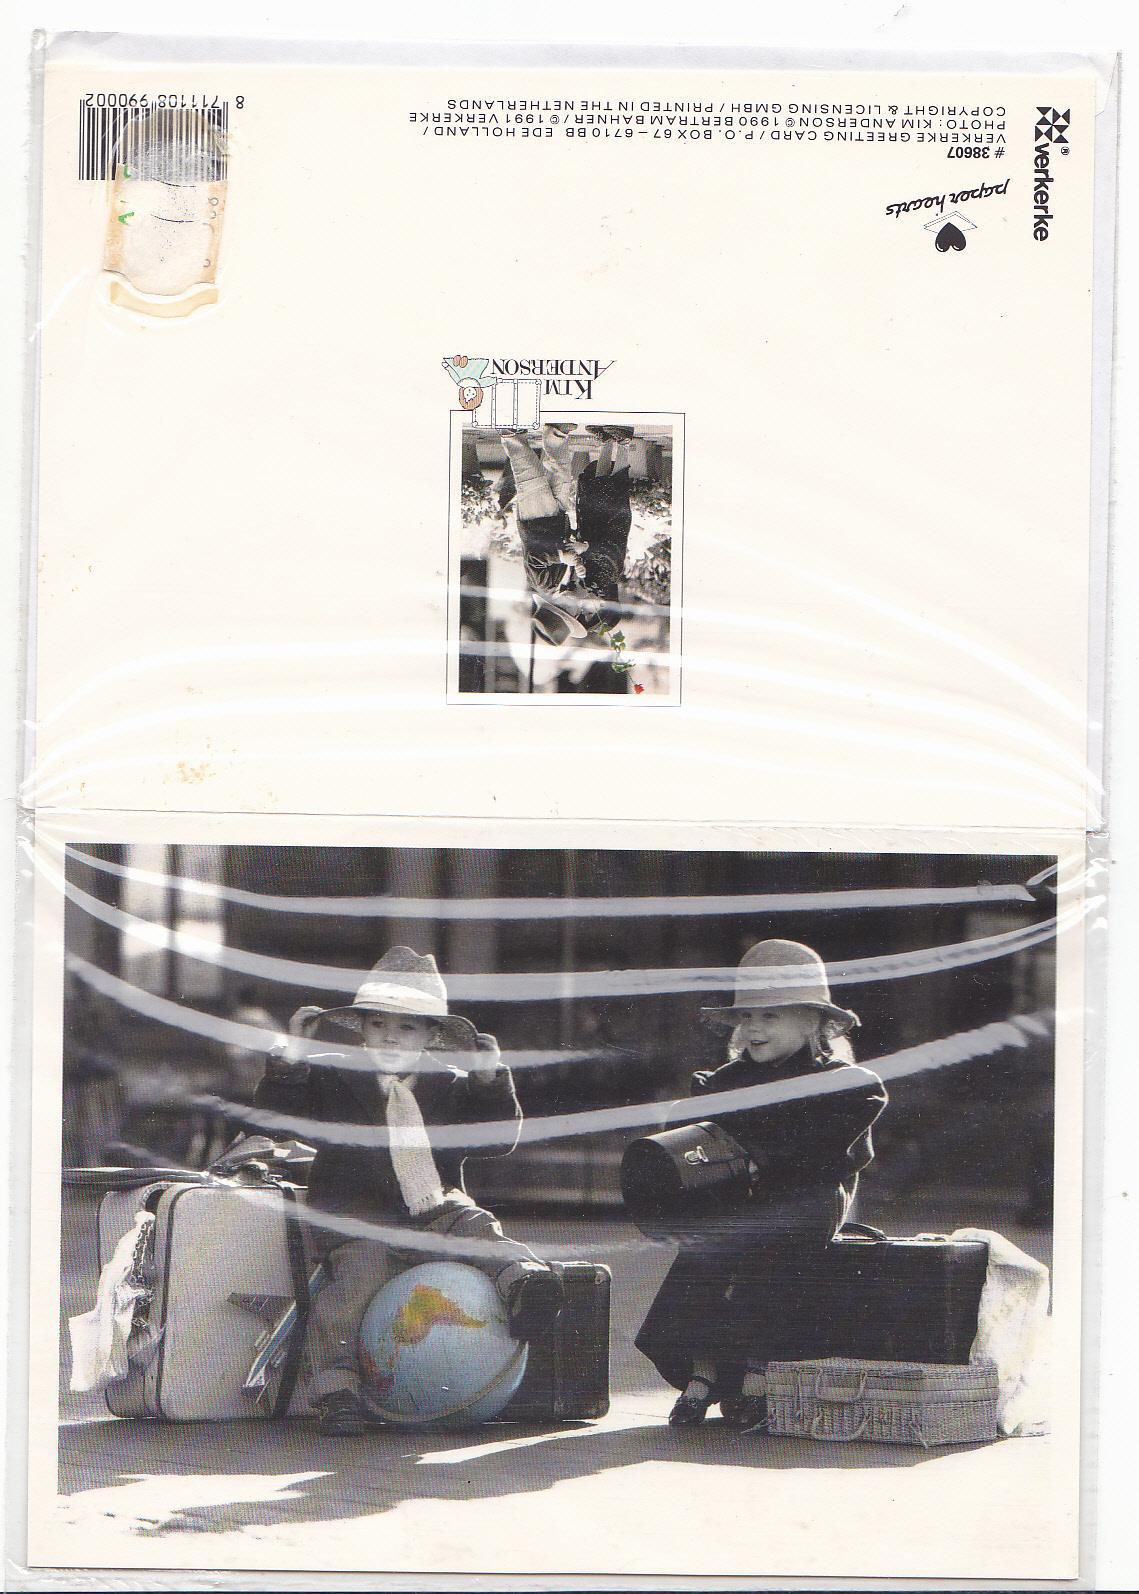 troc de troc carte postale noir et blanc "voyage" image 0